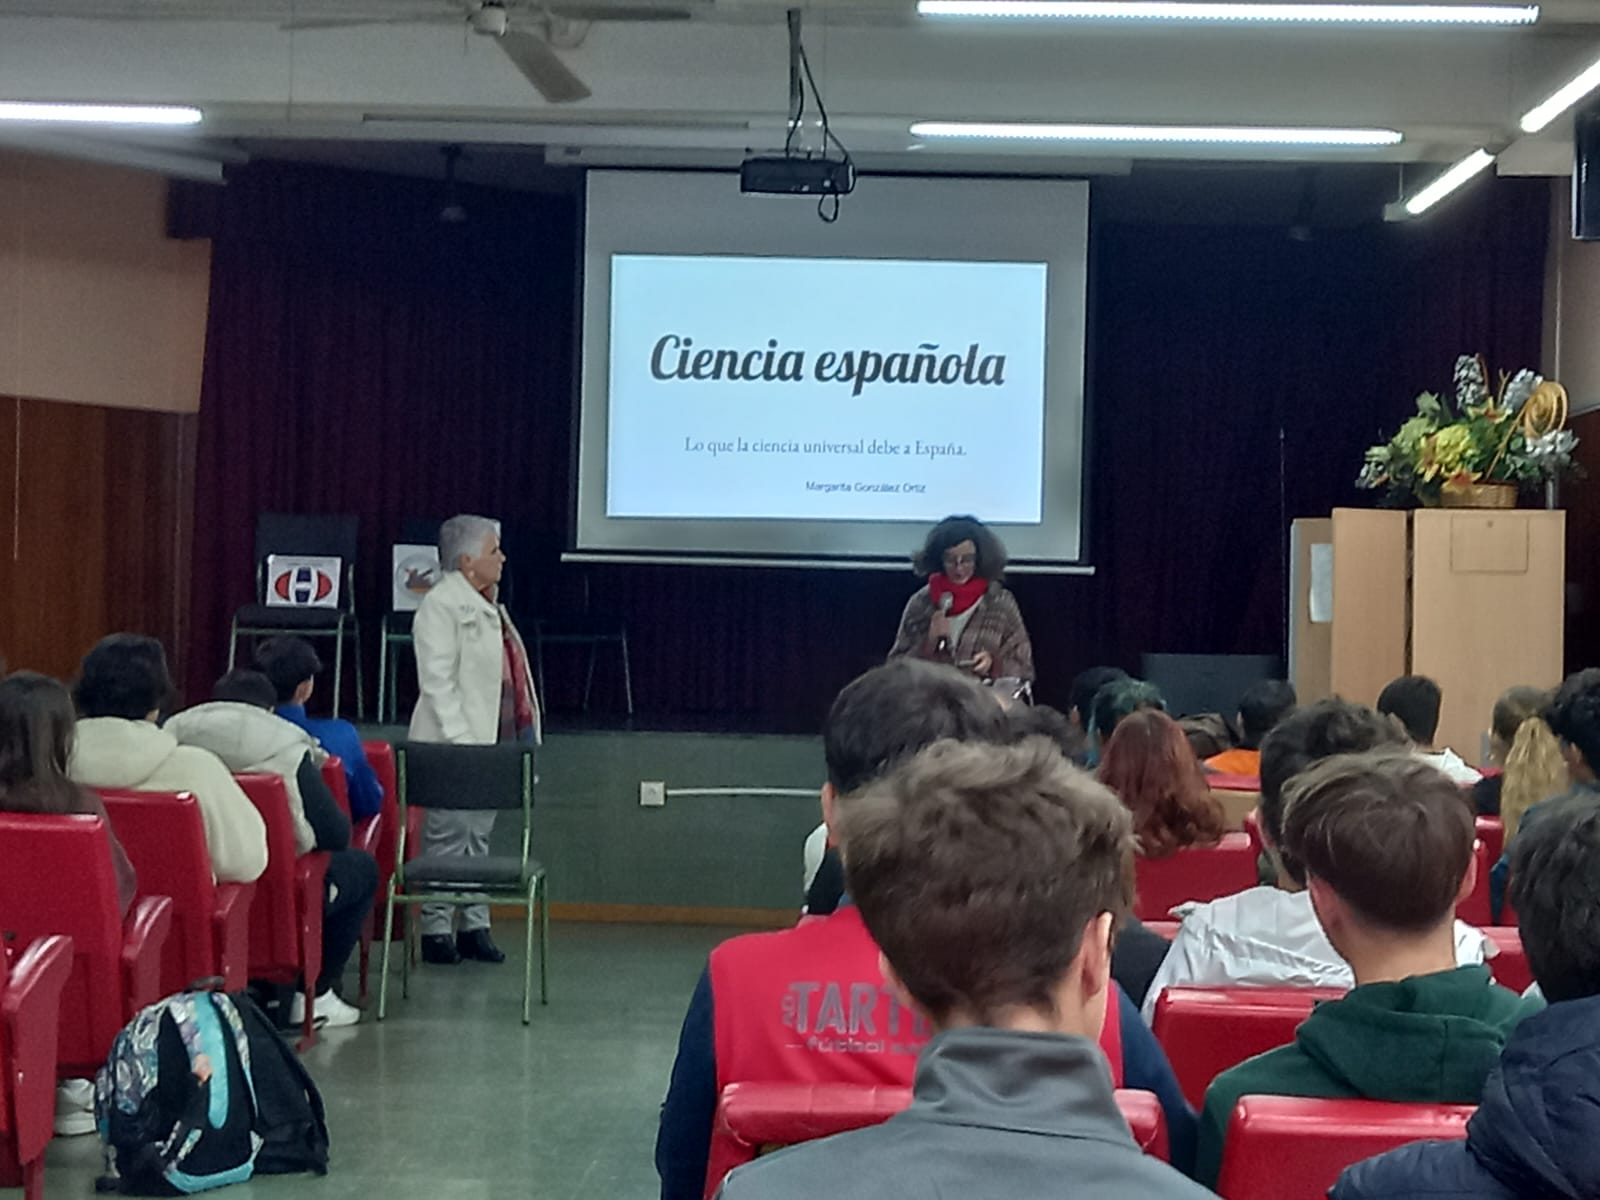 Foto de la presentación de la charla sobre ciencia española.